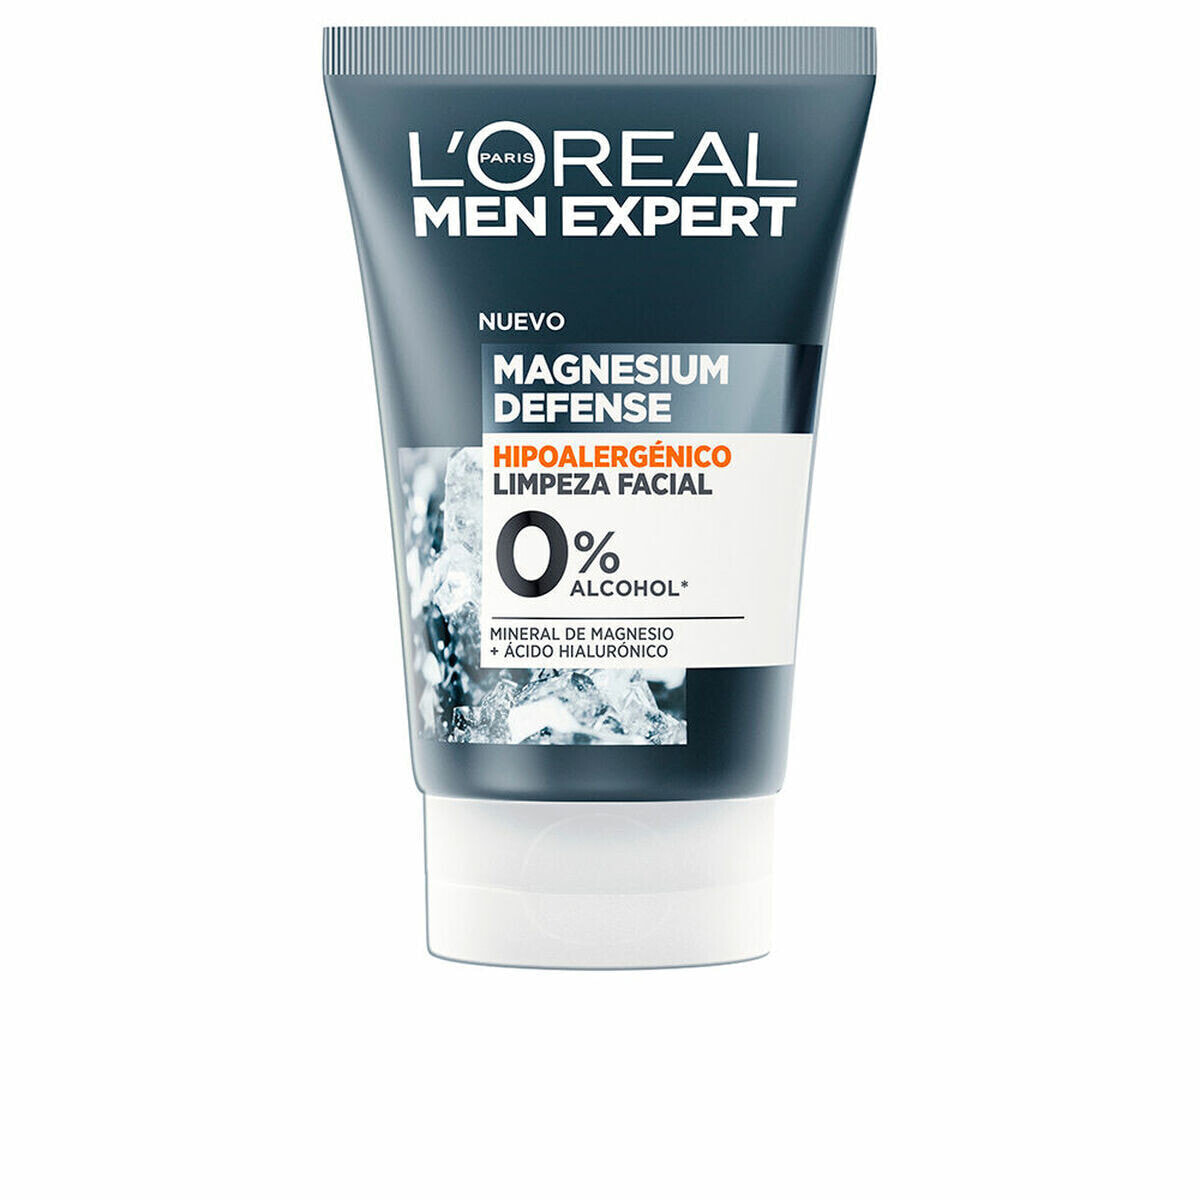 Очищающий гель для лица L'Oreal Make Up Men Expert Magnesium Defense 100 ml